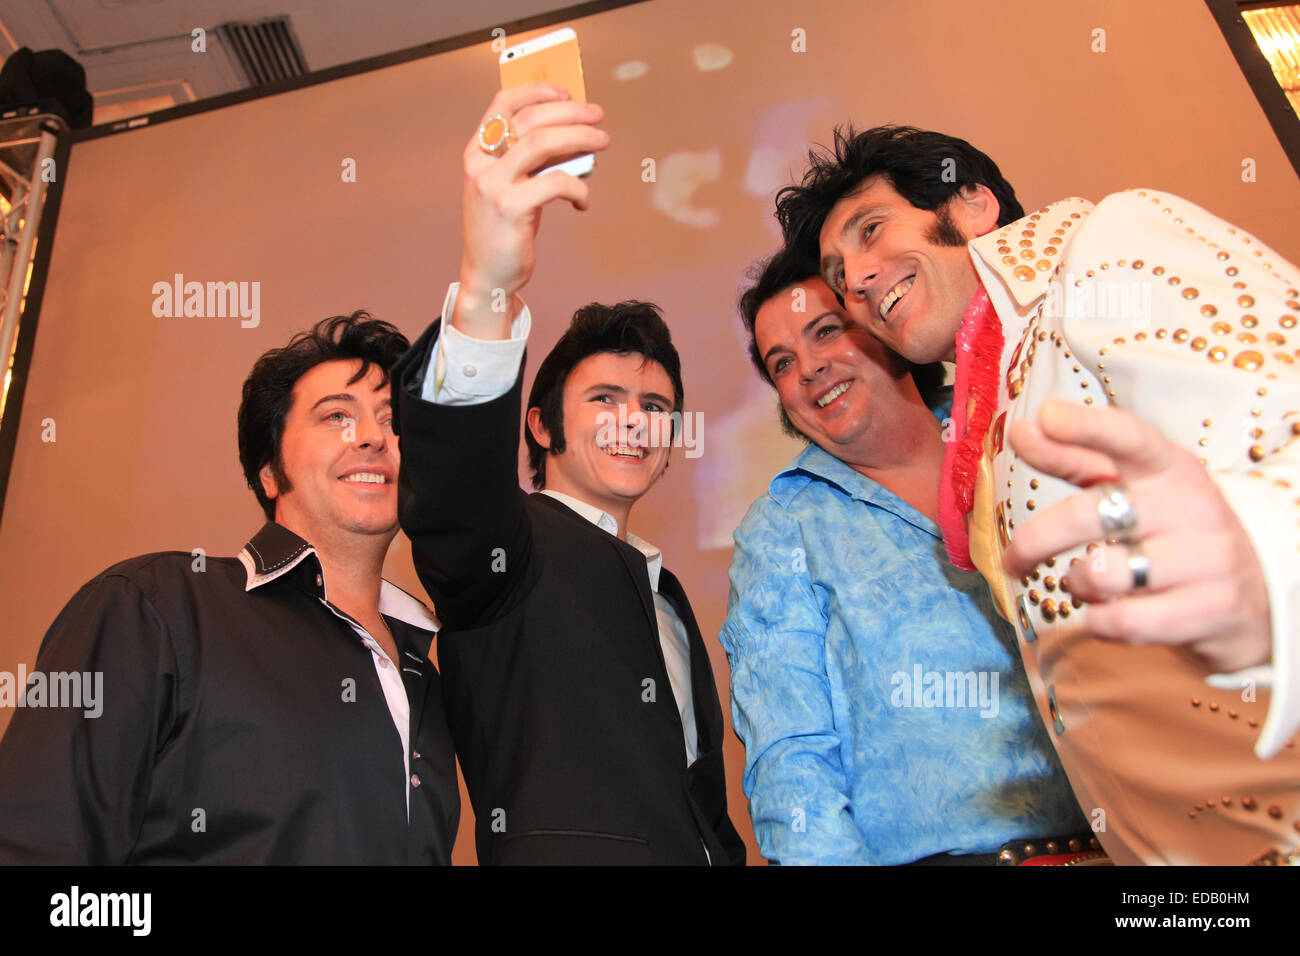 Quatre imitateurs d'Elvis Presley hommage ou artistes posent pour une photographie selfies, lors d'un concours, Banque D'Images